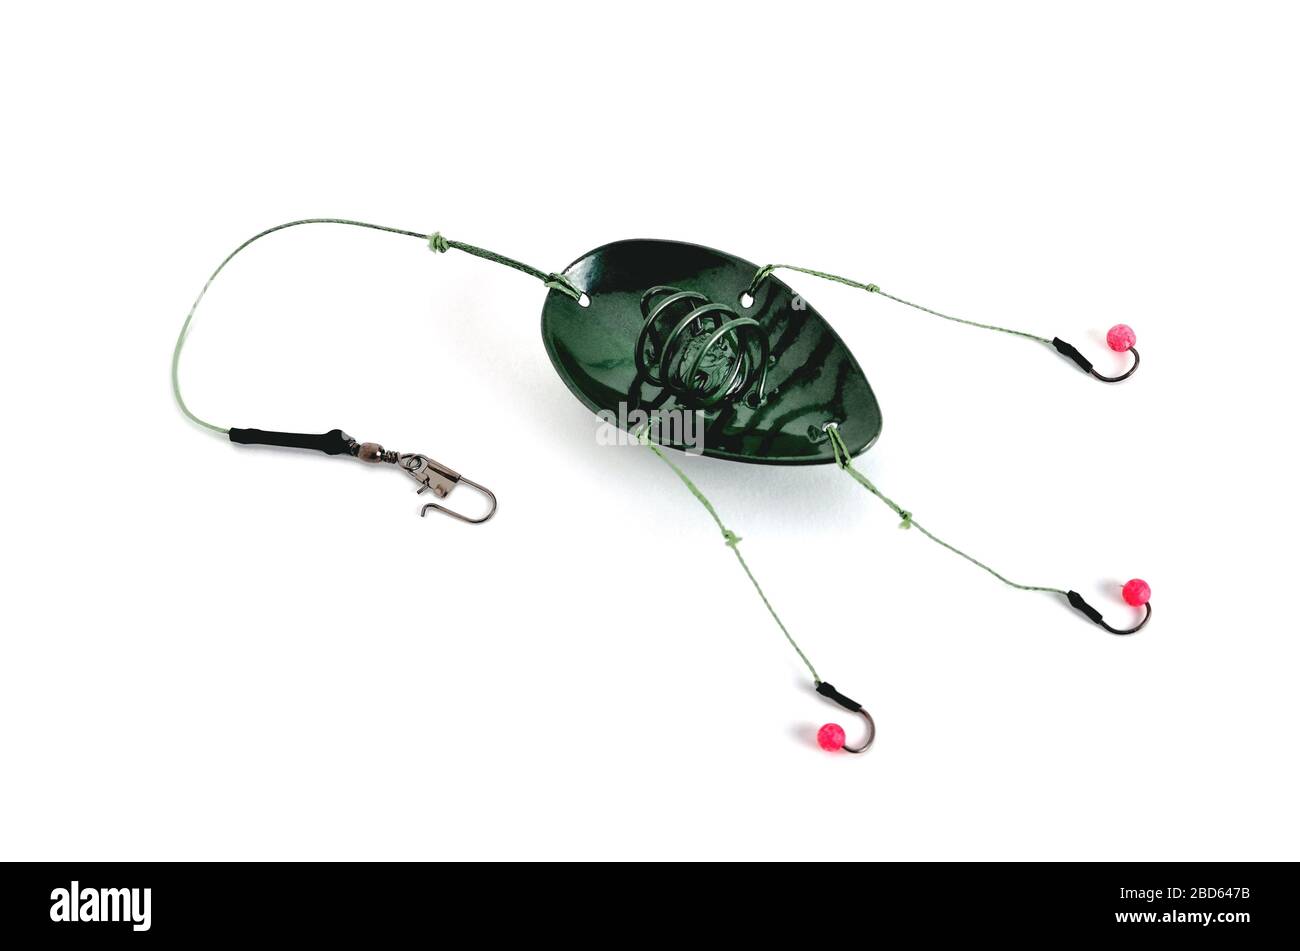 cuchara de pesca, ganchos de pesca y línea de pesca, accesorios para la  pesca de fondo en un primer plano de fondo blanco Fotografía de stock -  Alamy